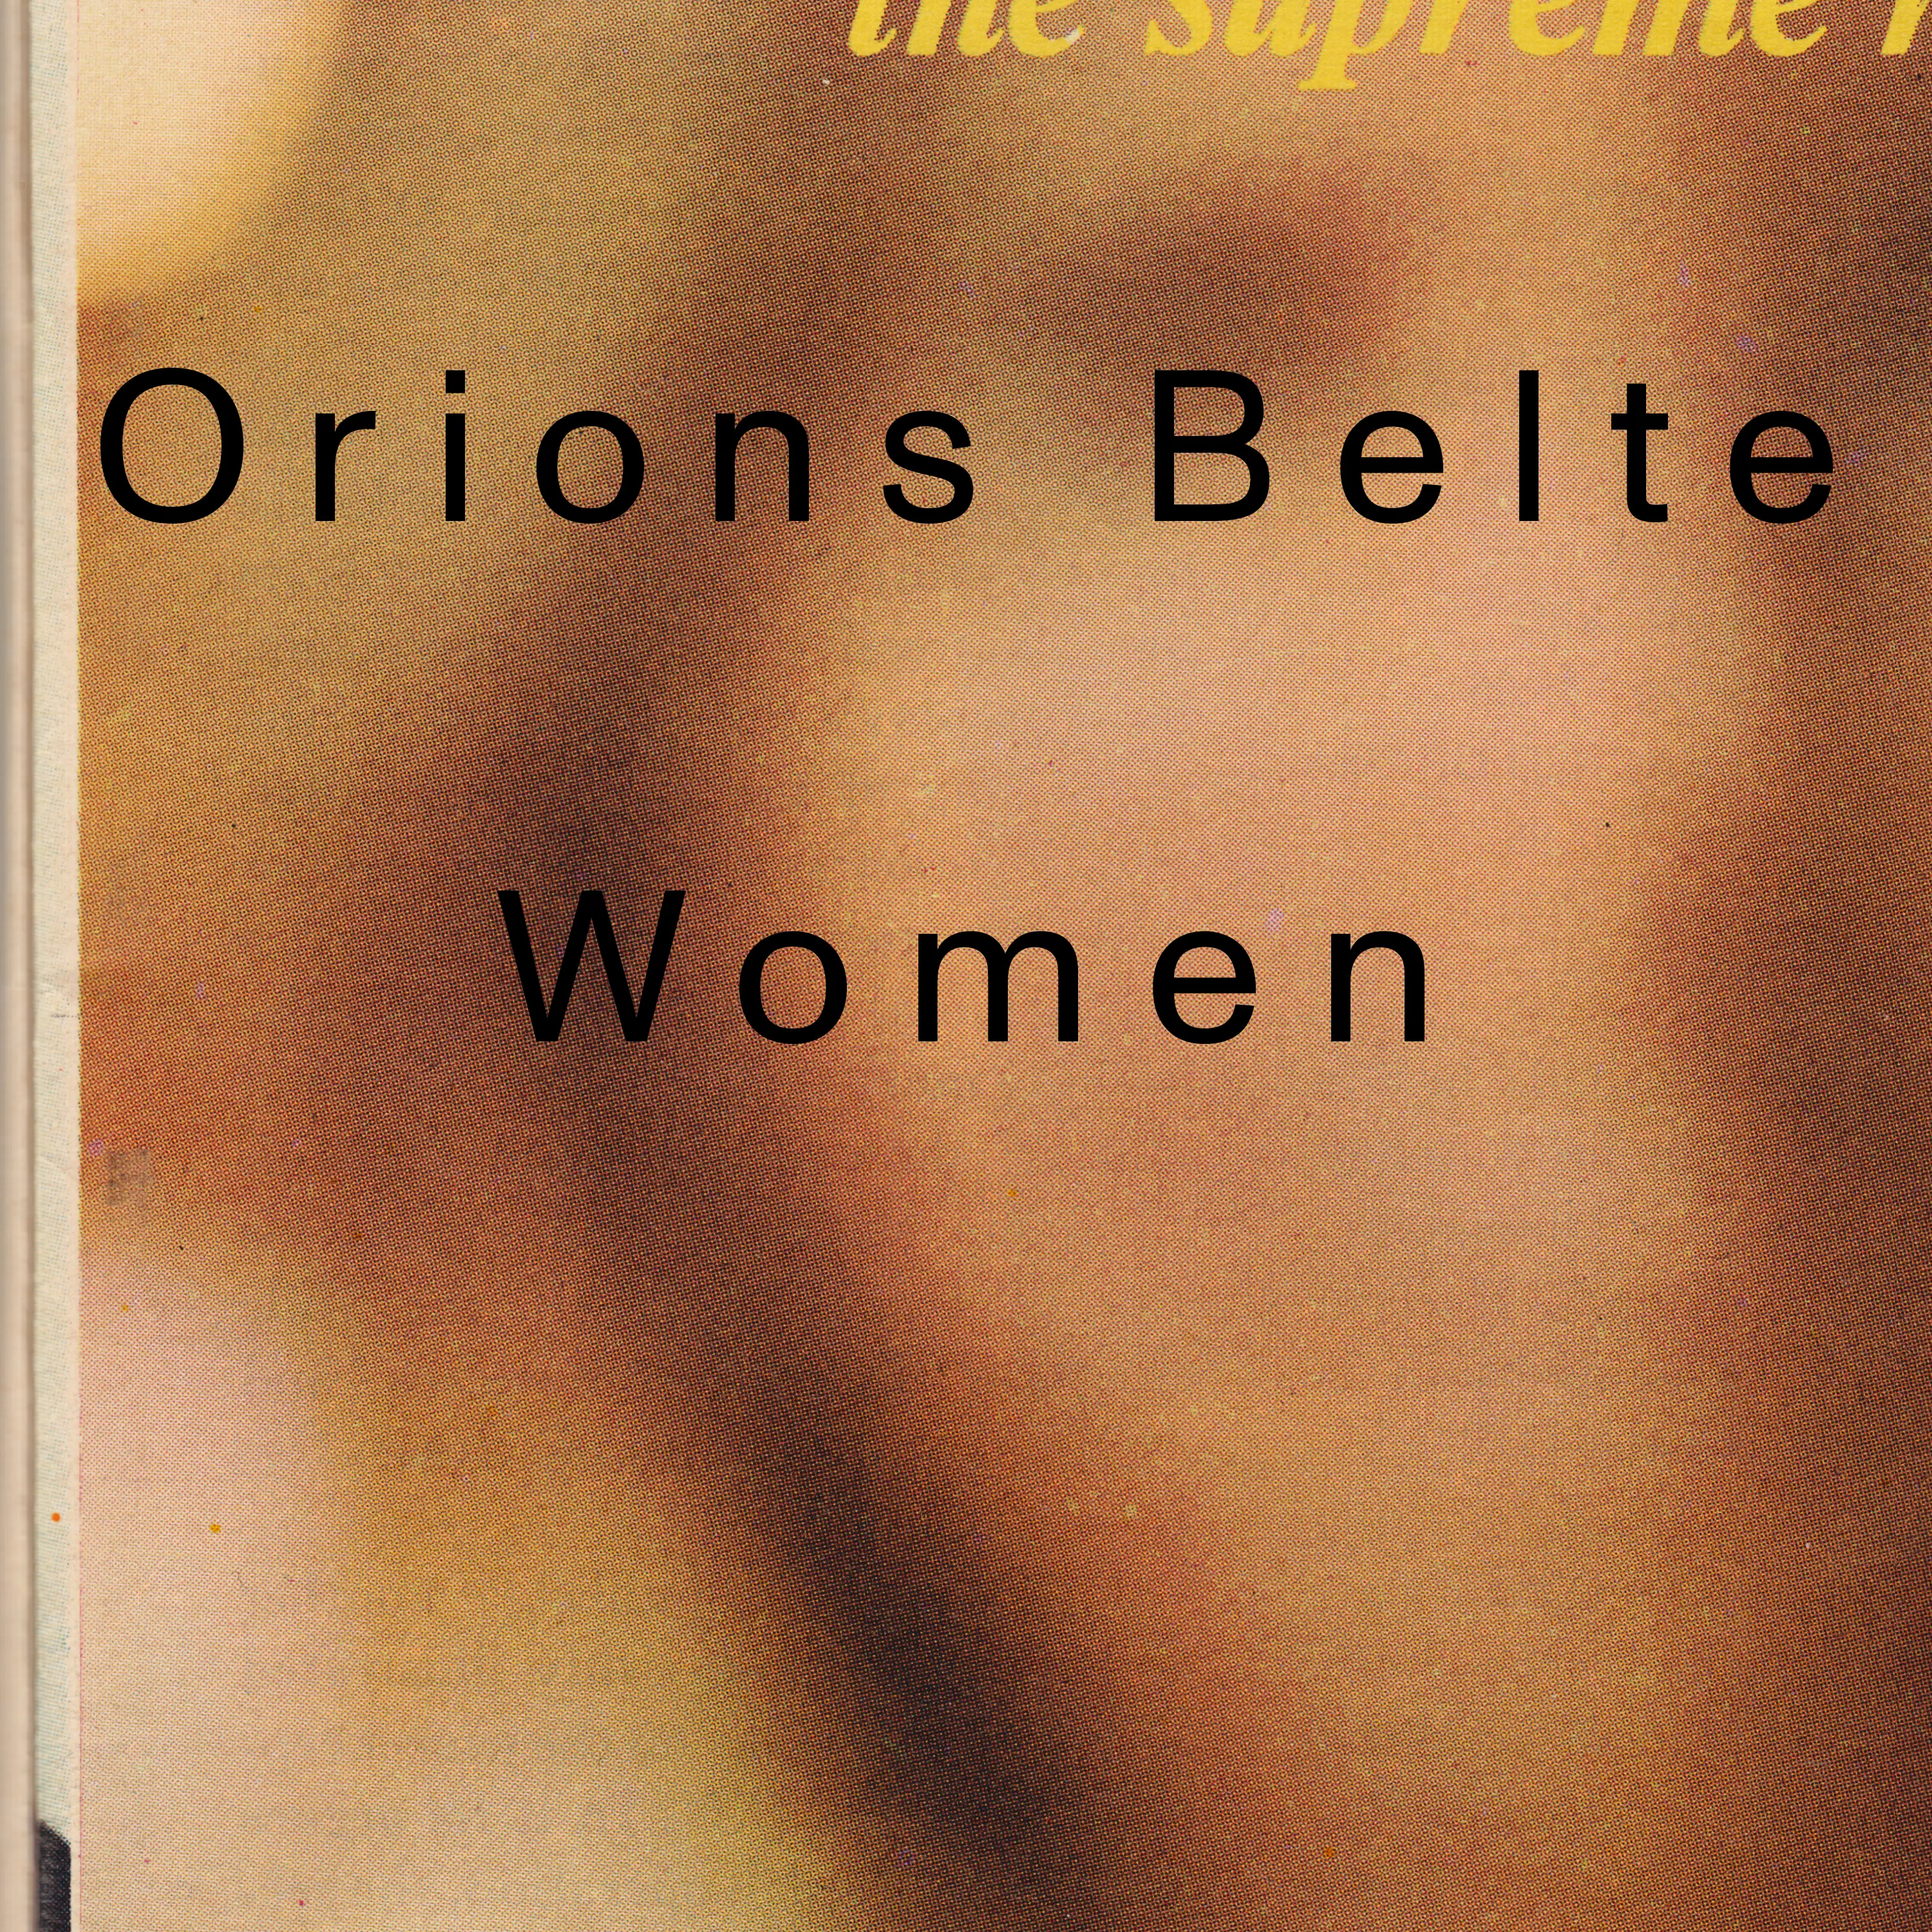 Women - Orions Belte